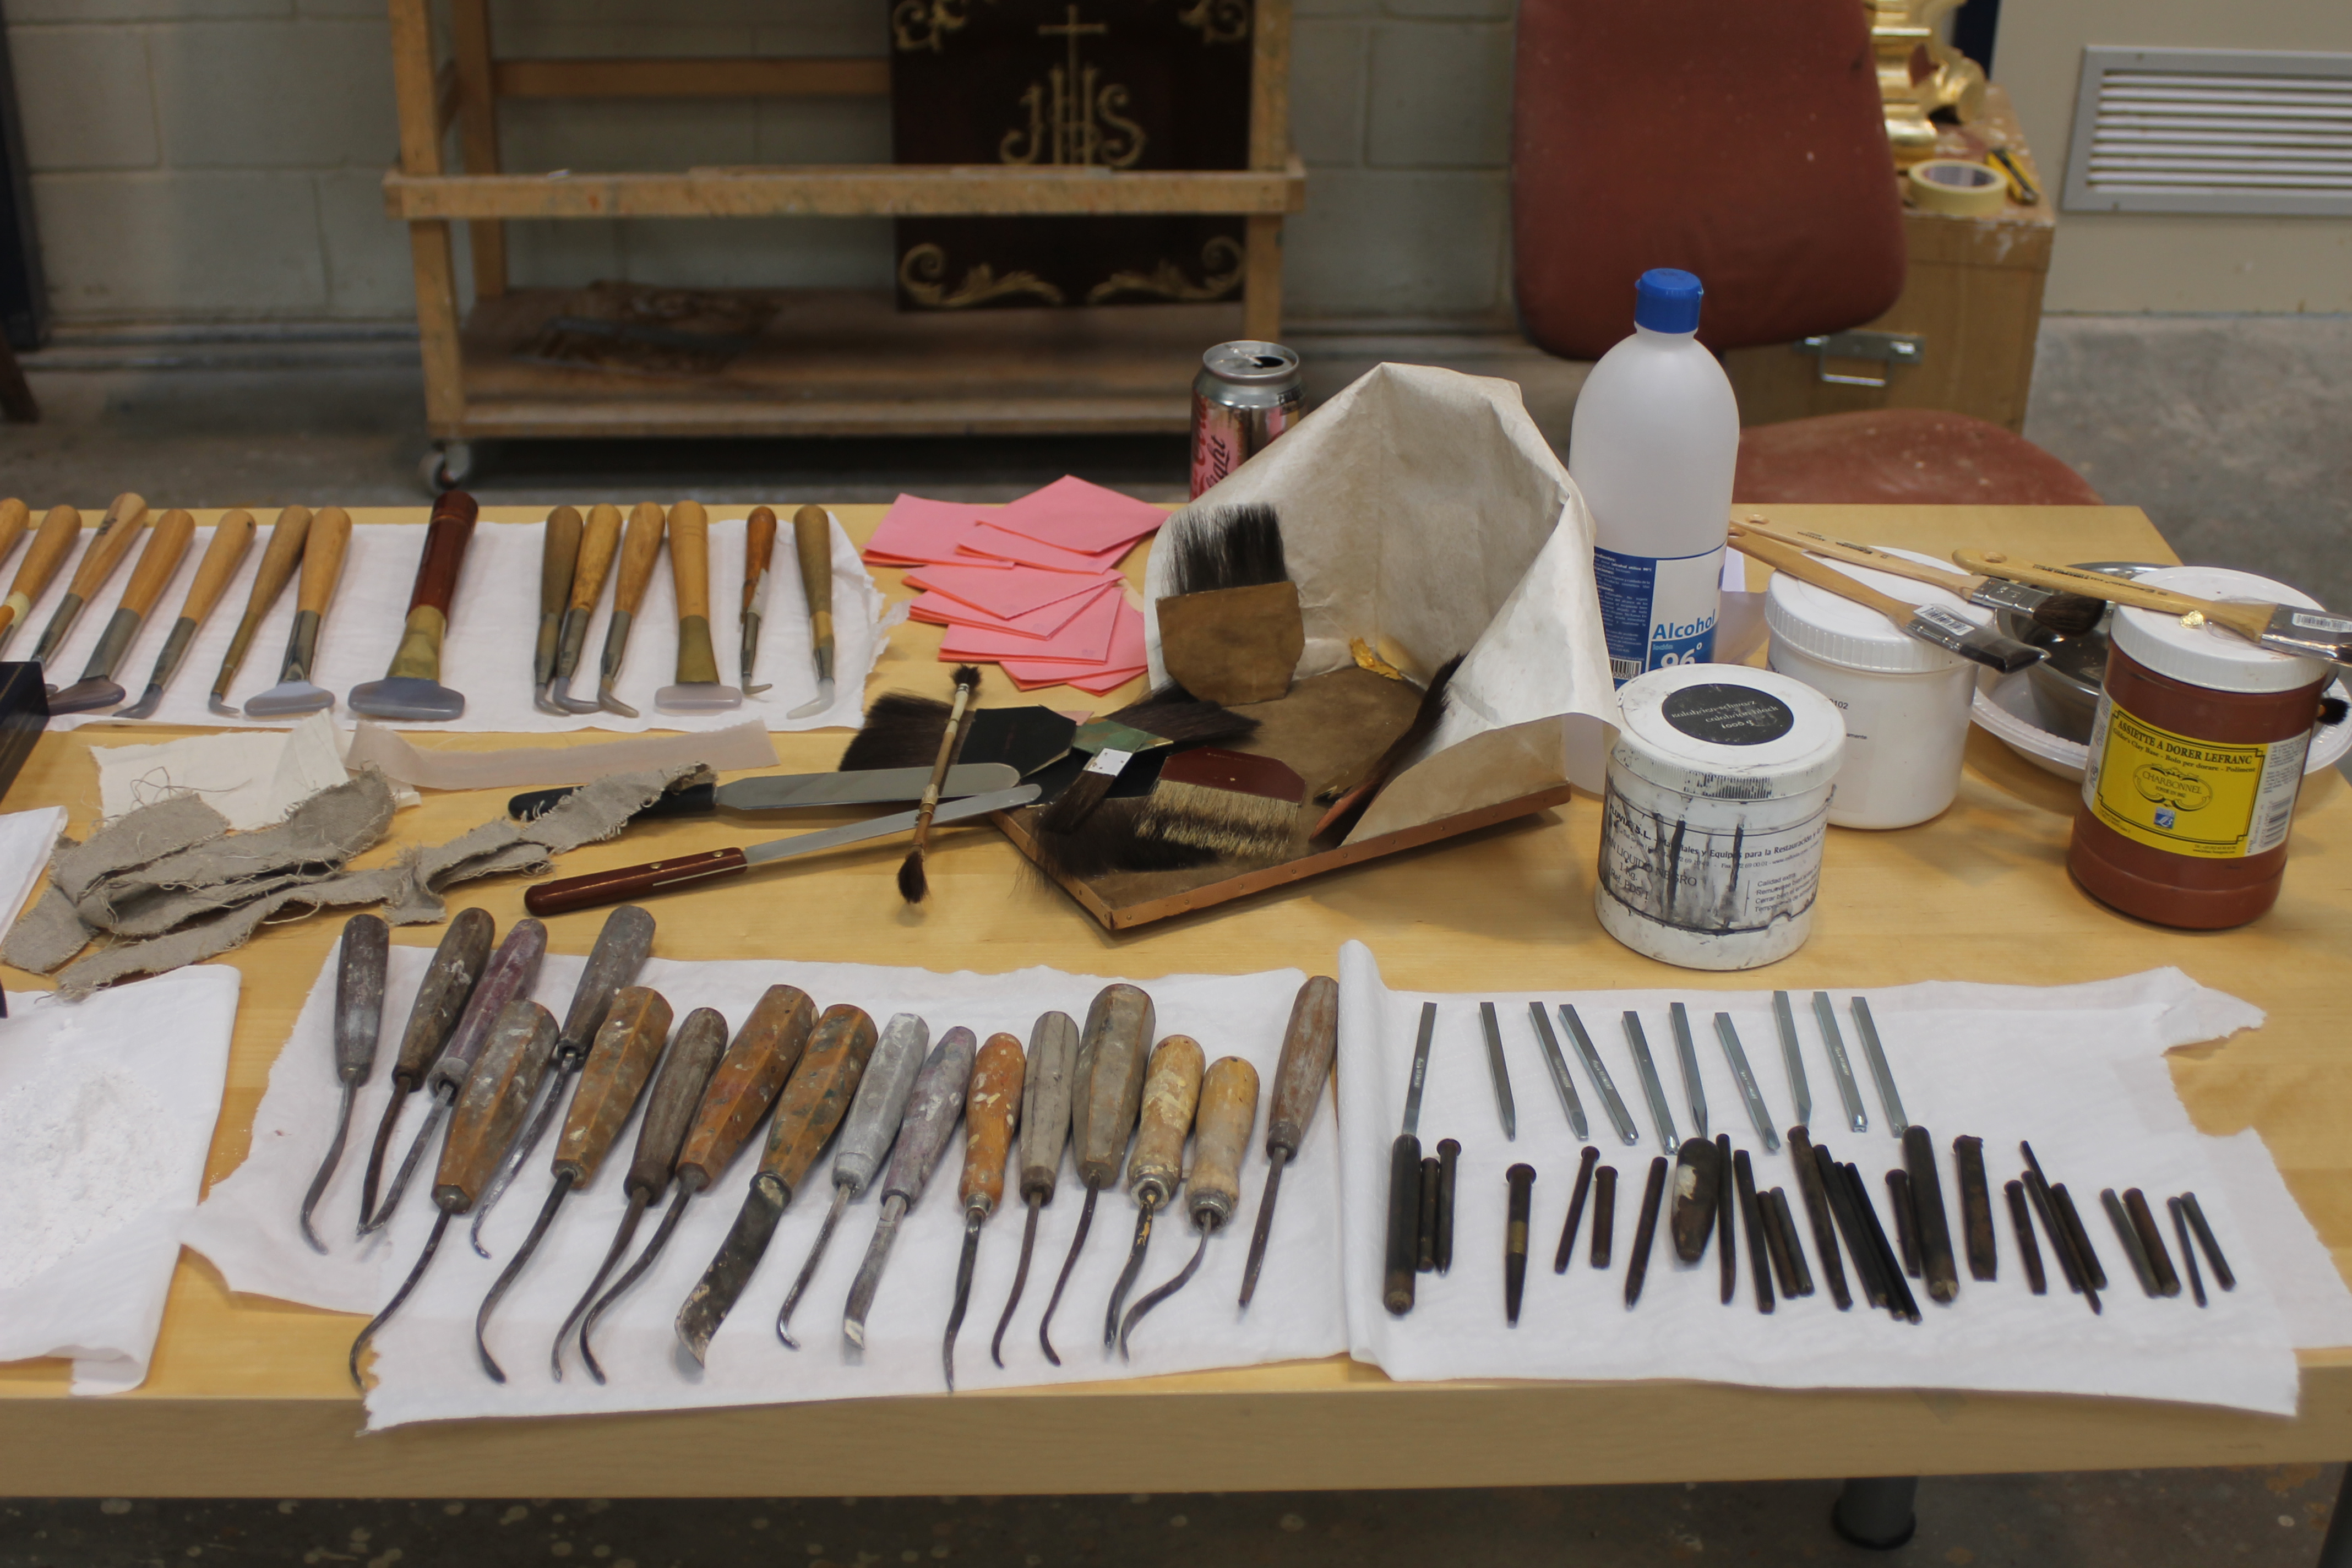 Útiles y herramientas del dorador. Hierros, cinceles, bol, pinceles, pomazón, polonesas, cuchillo, oro fino y ágatas.